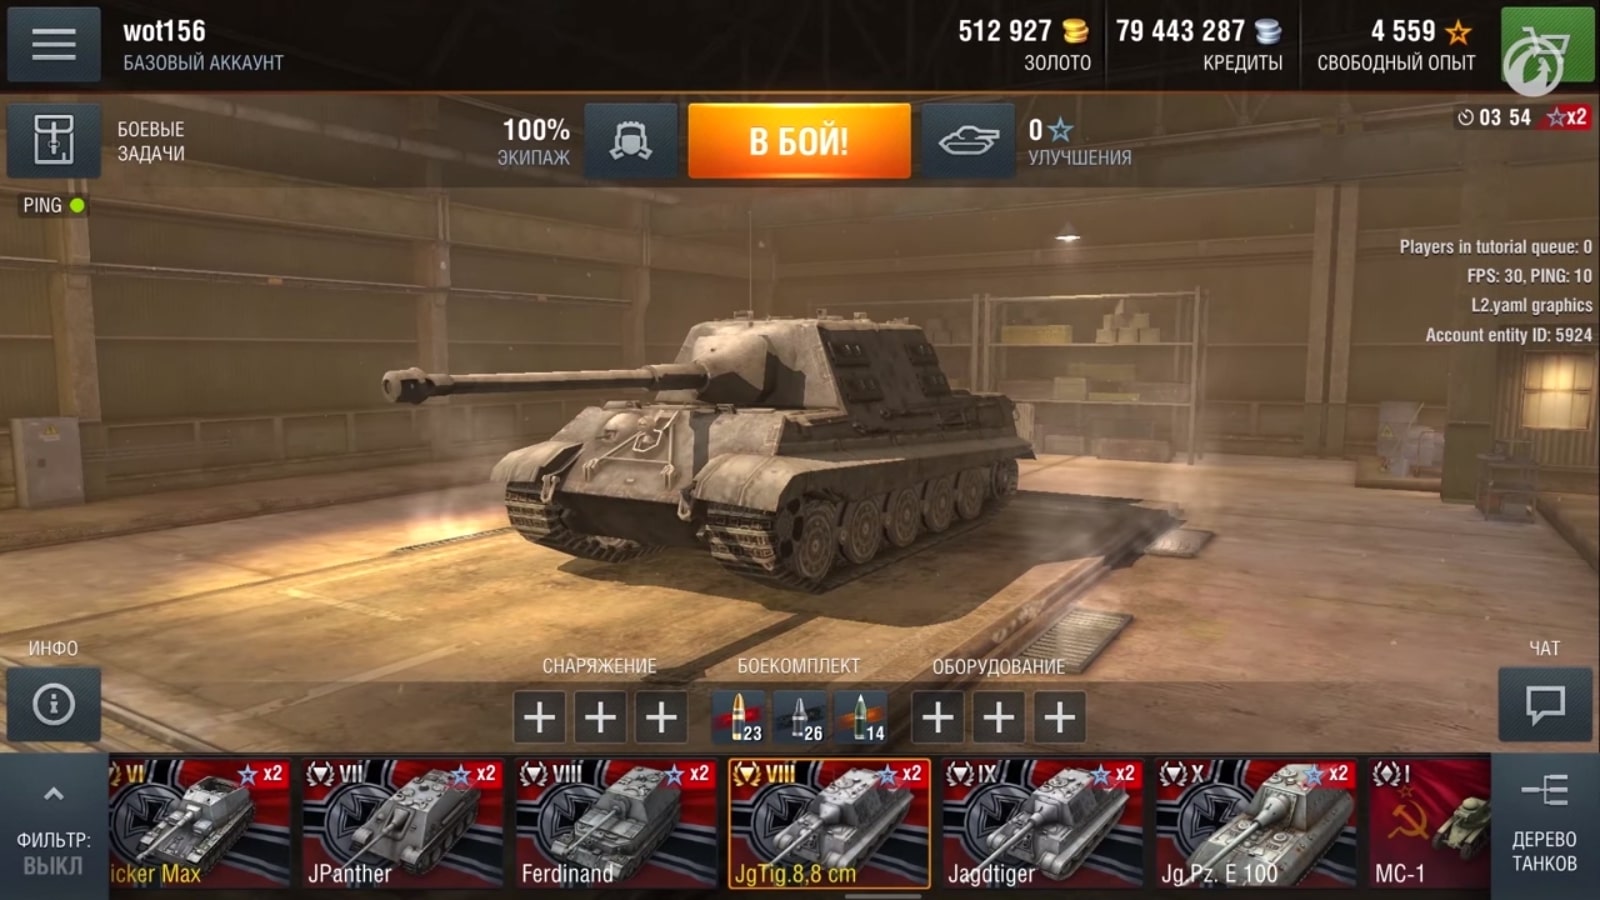 Как удалить свой аккаунт в World of Tanks Blitz? - Онлайн справочник по настройке гаджетов